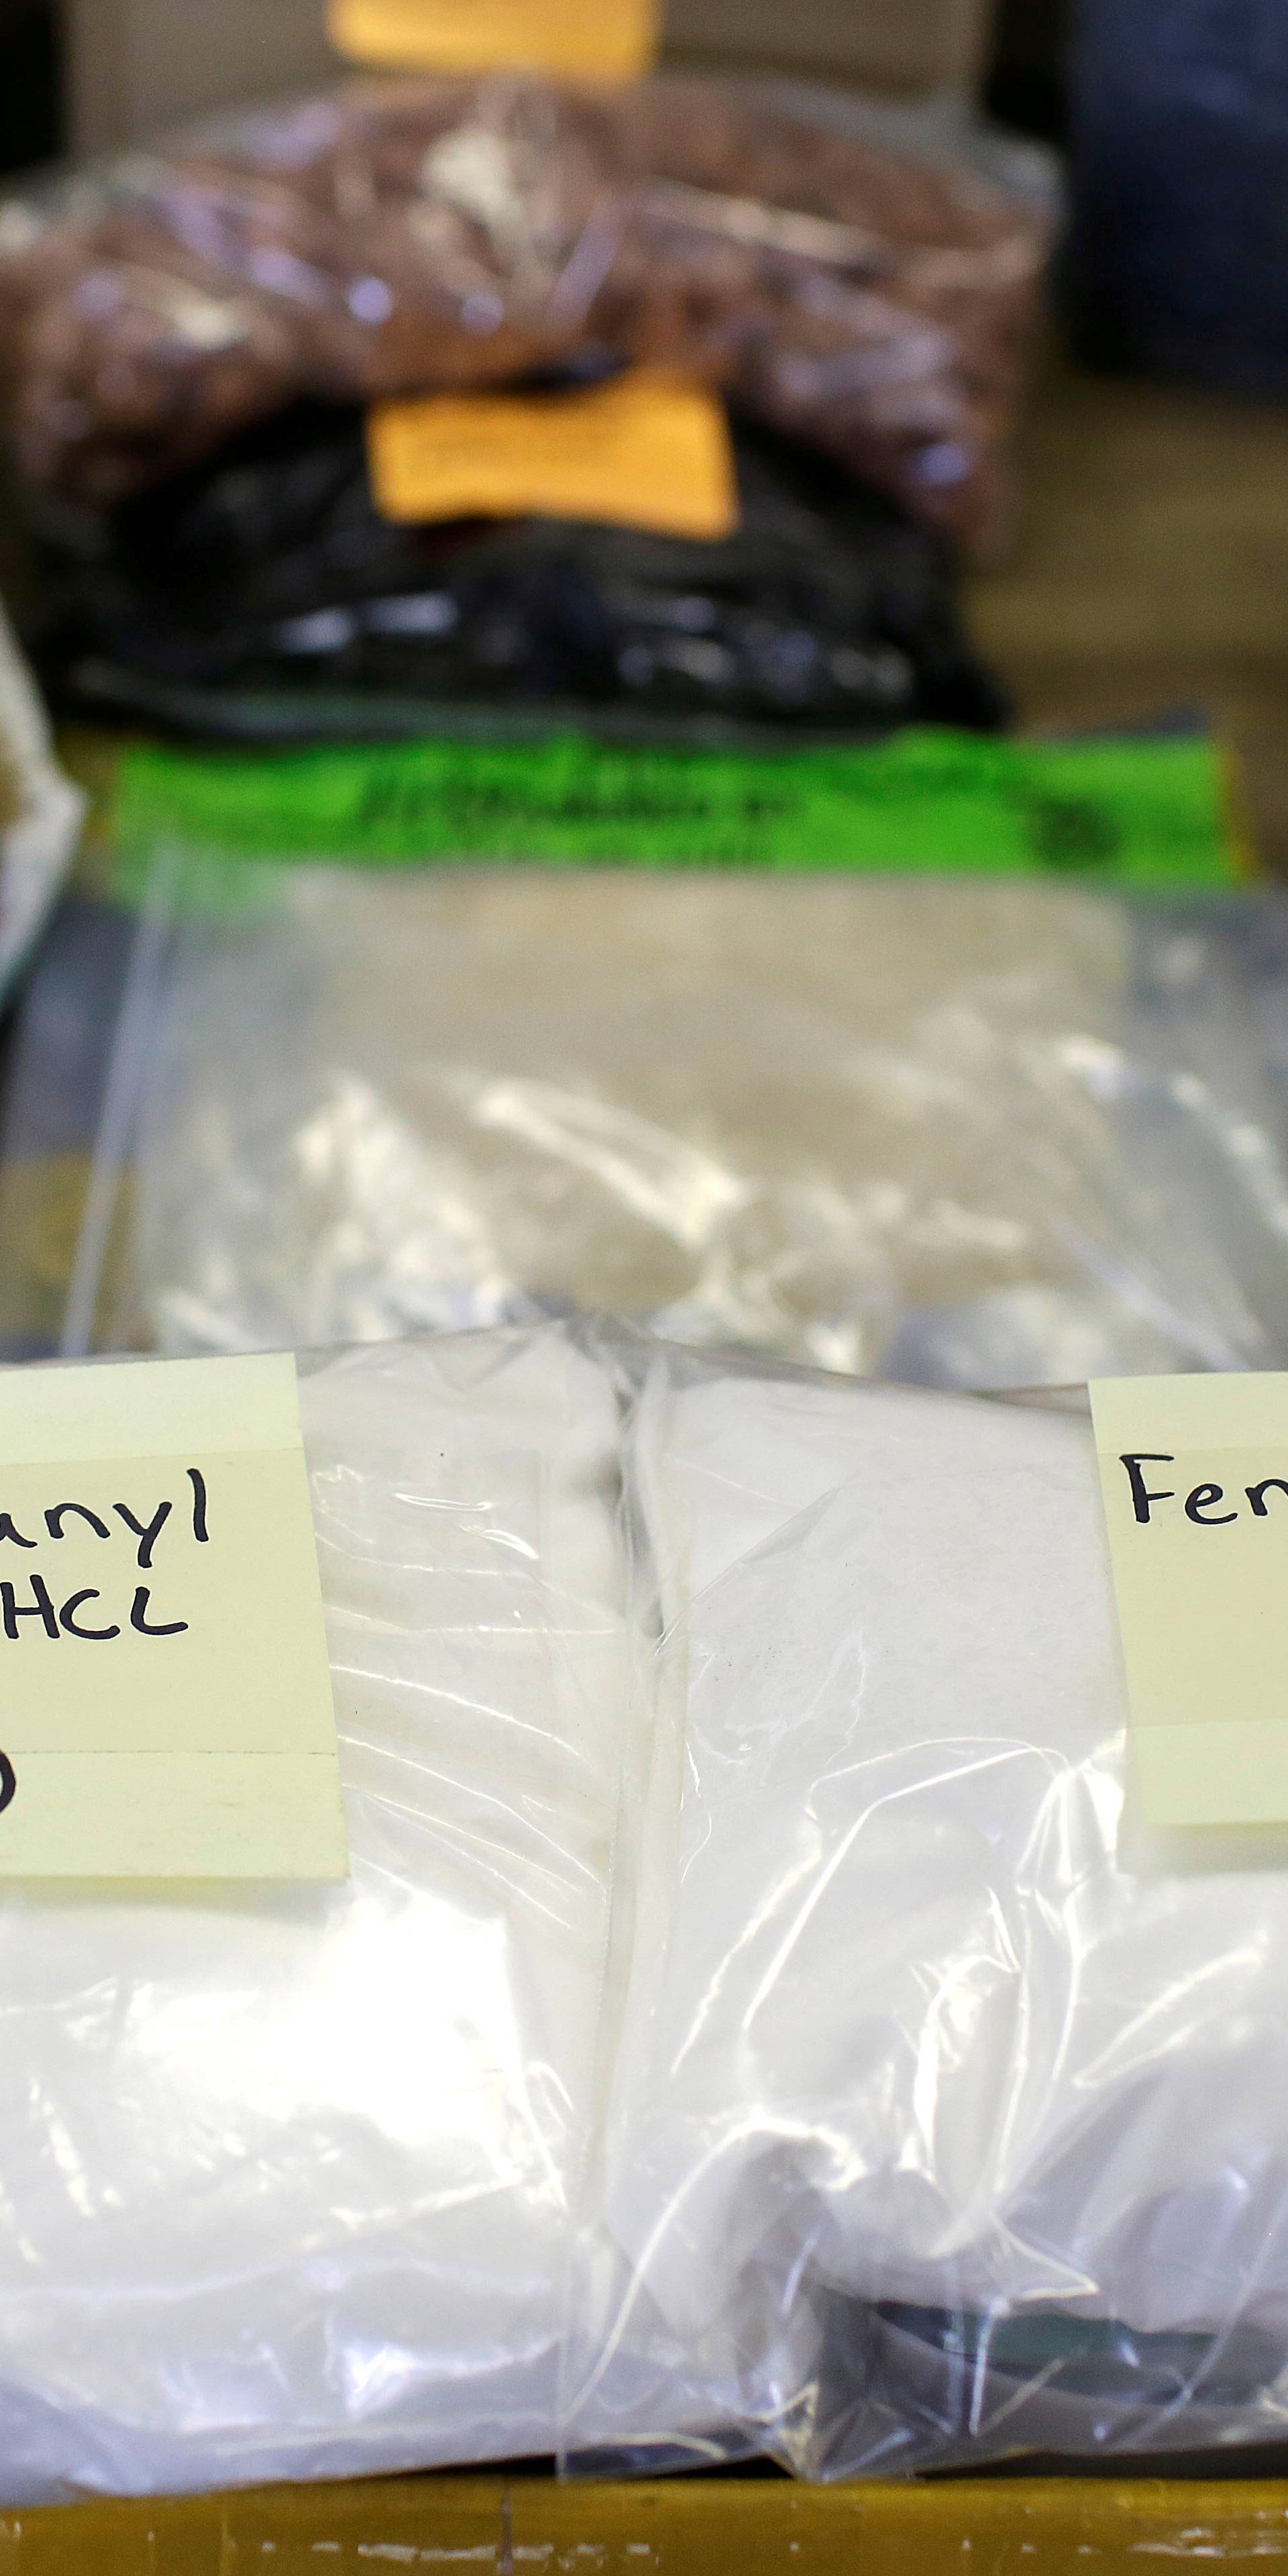 Droga koja ubija i u mikrodozi: Sve više fentanila na tržištu